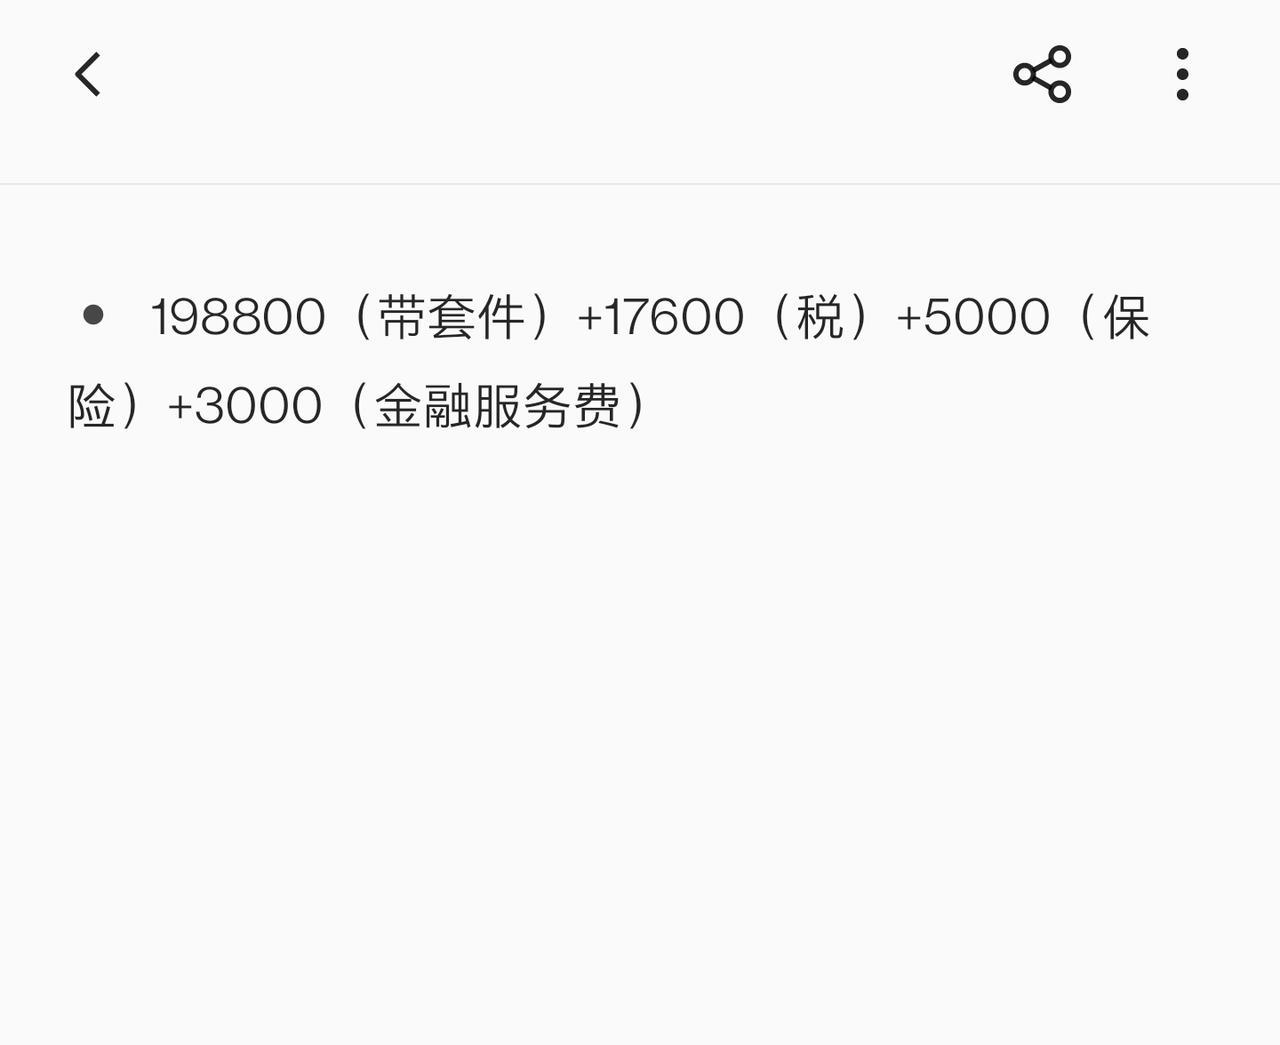 领克03 03+这价格可以吗？坐标杭州，本来要付定金的，但销售最后很不耐烦，于是果断走人。